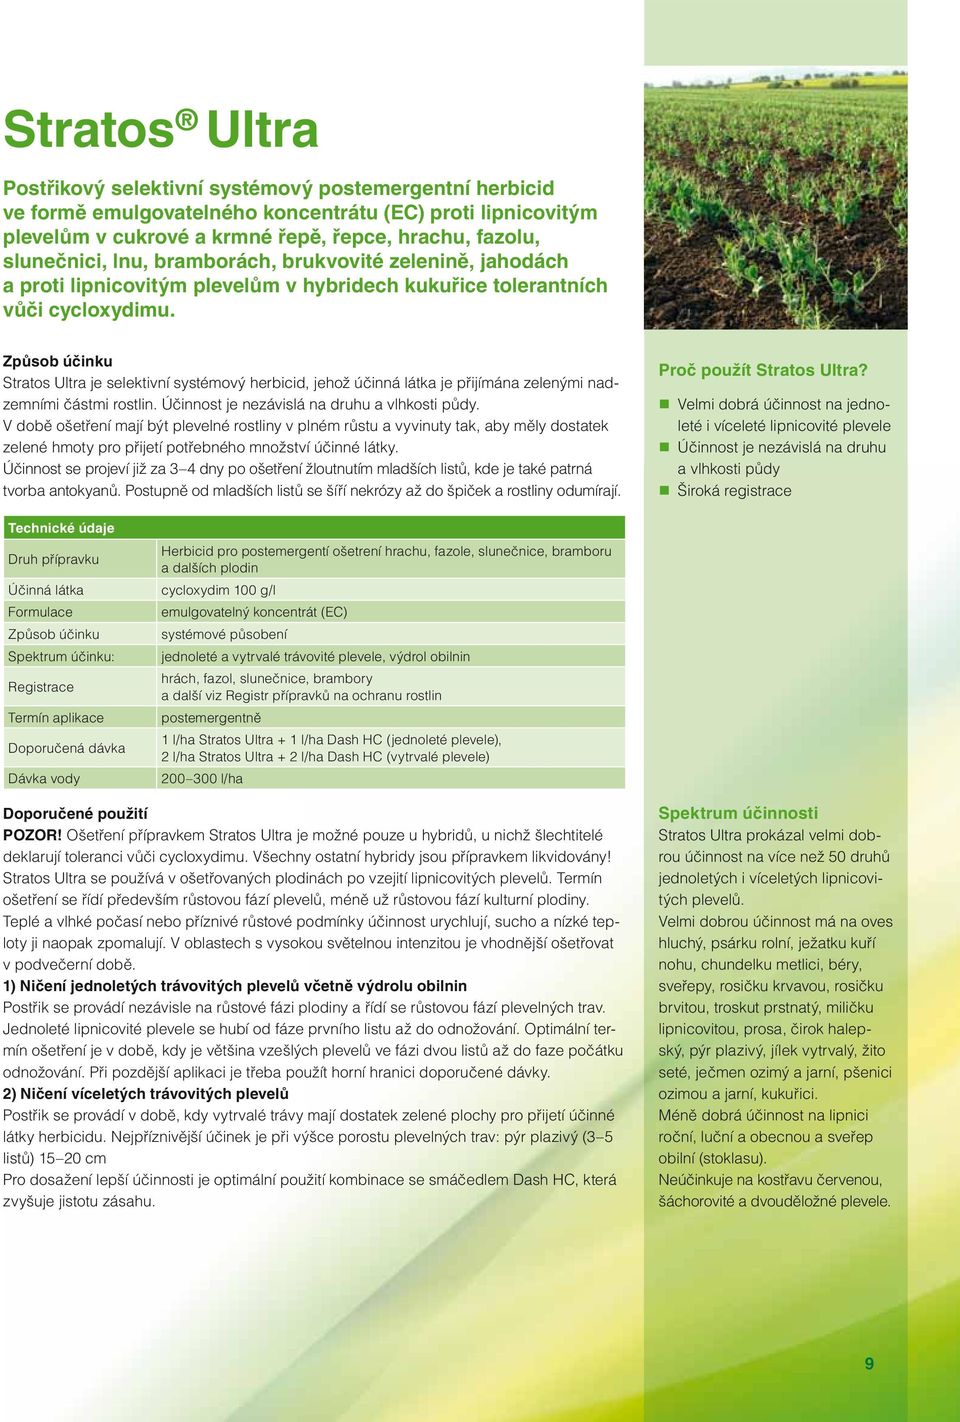 Stratos Ultra je selektivní systémový herbicid, jehož účinná látka je přijímána zelenými nadzemními částmi rostlin. Účinnost je nezávislá na druhu a vlhkosti půdy.